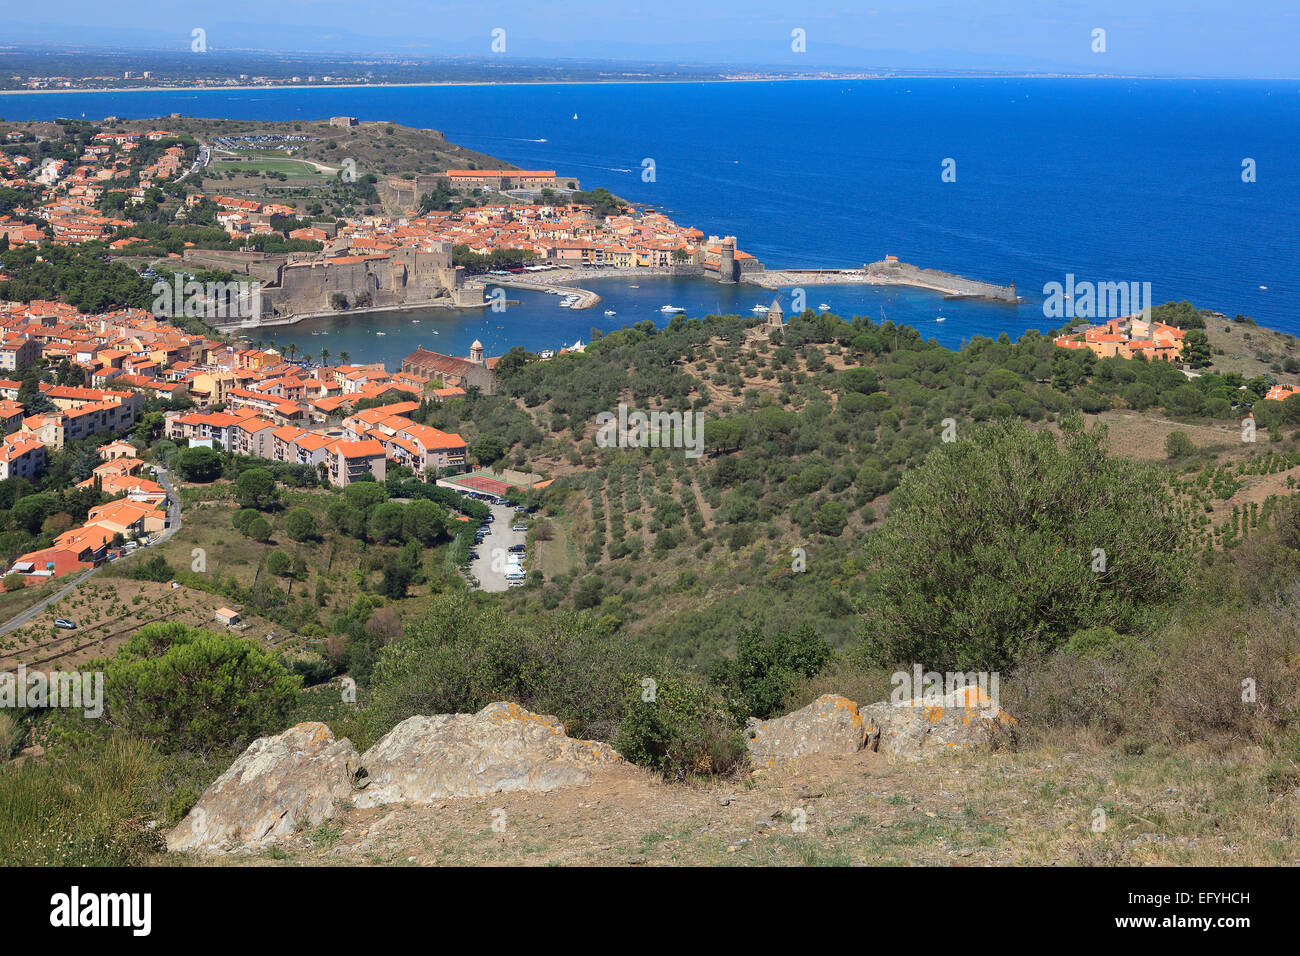 Vue panoramique sur la magnifique ville médiévale de Collioure dans le sud de la France Banque D'Images